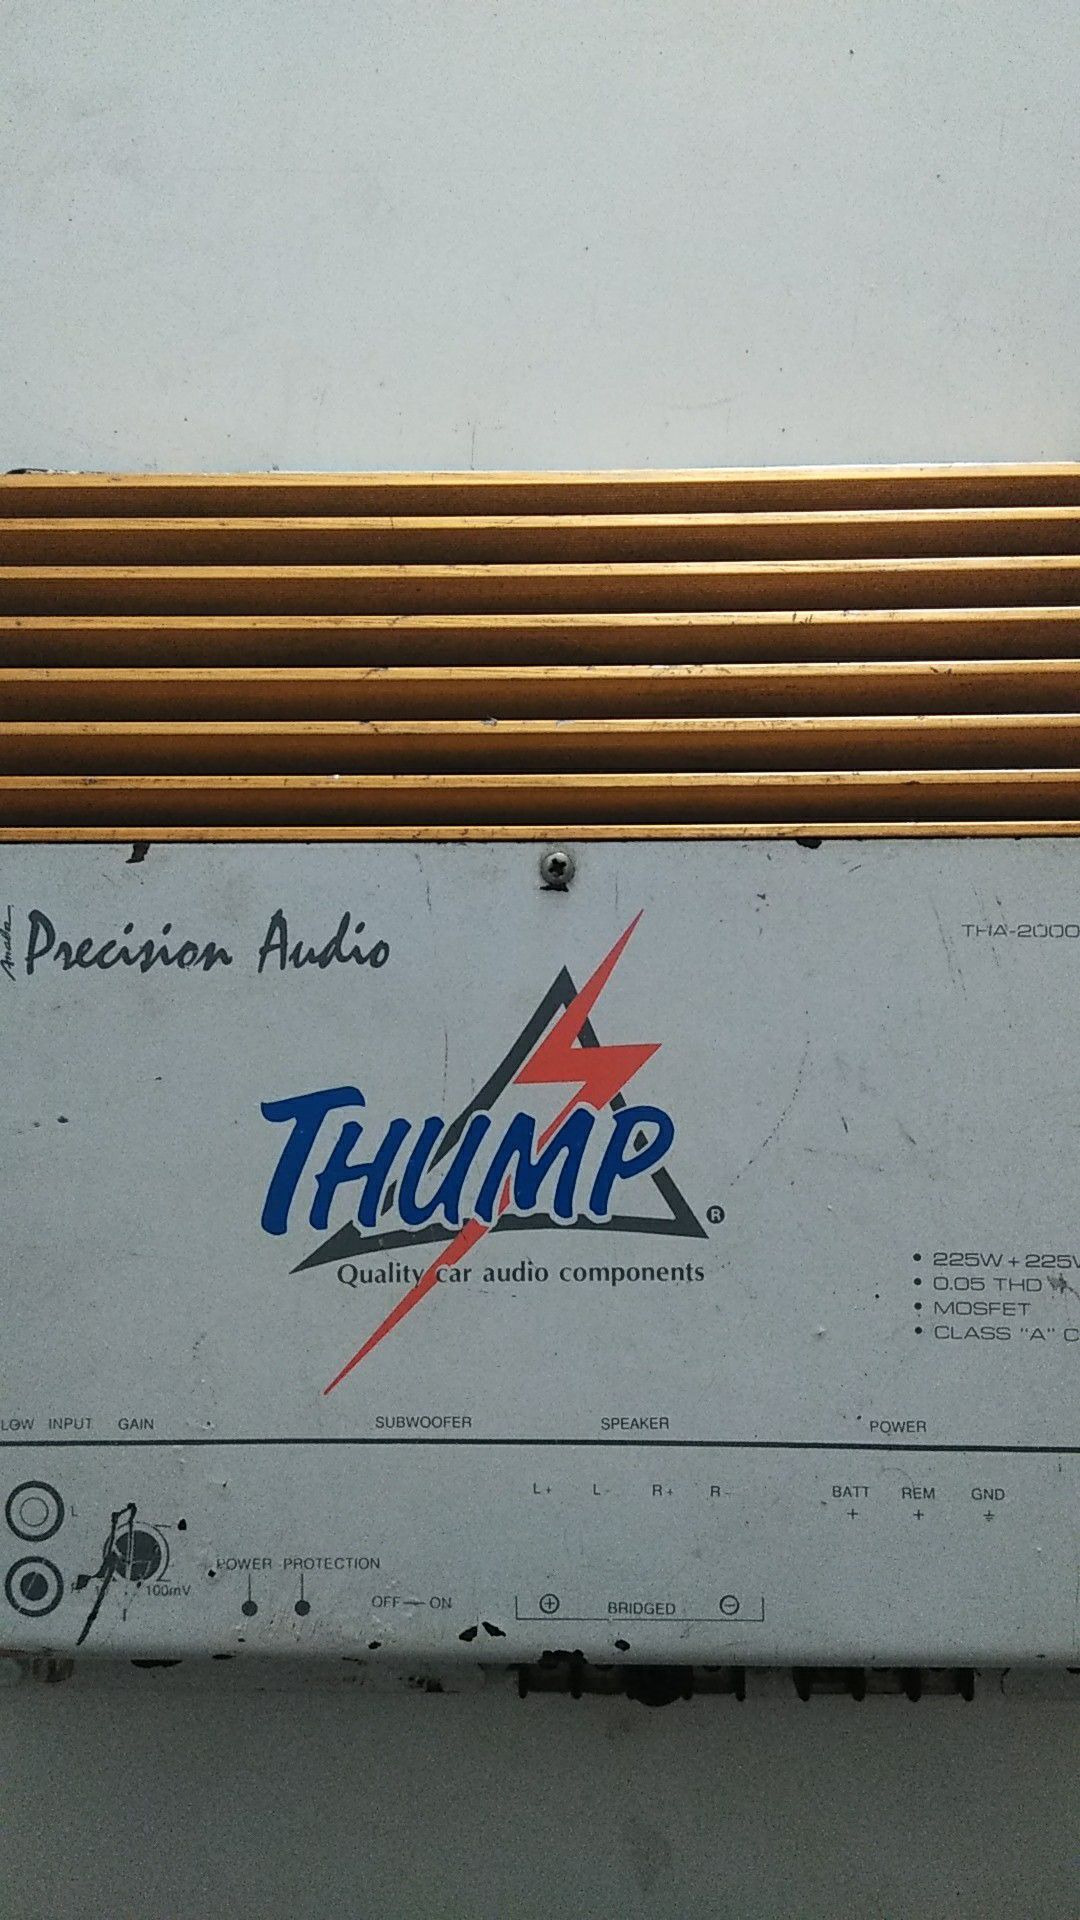 Old school Precision Audio amp